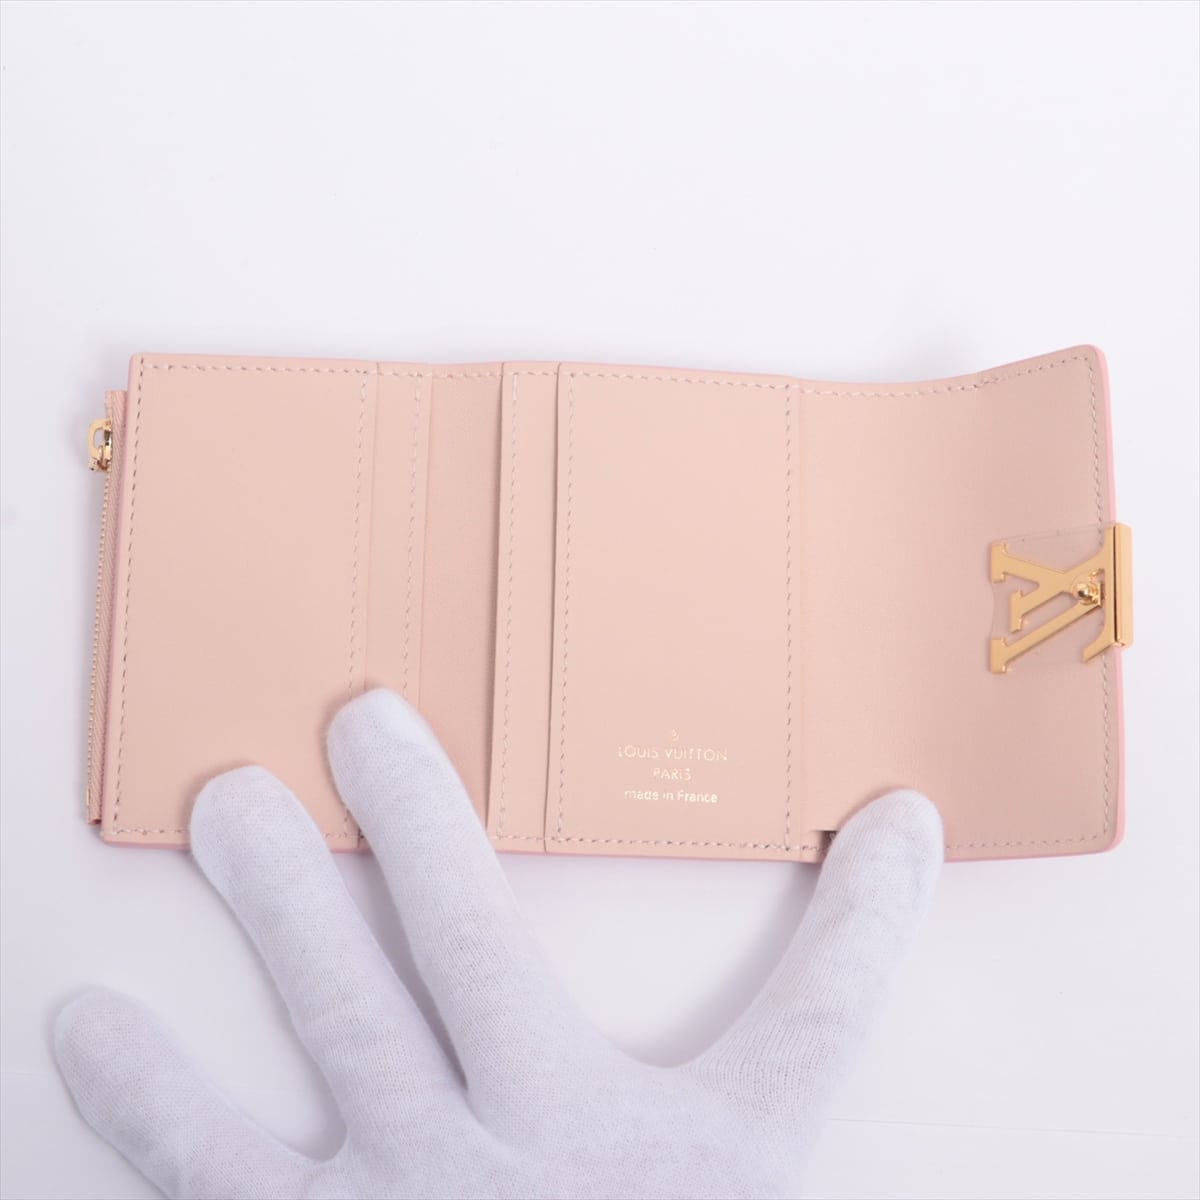 Louis Vuitton Taurillon Wallet Capucines XS M80986 rose metallic Japan limited color